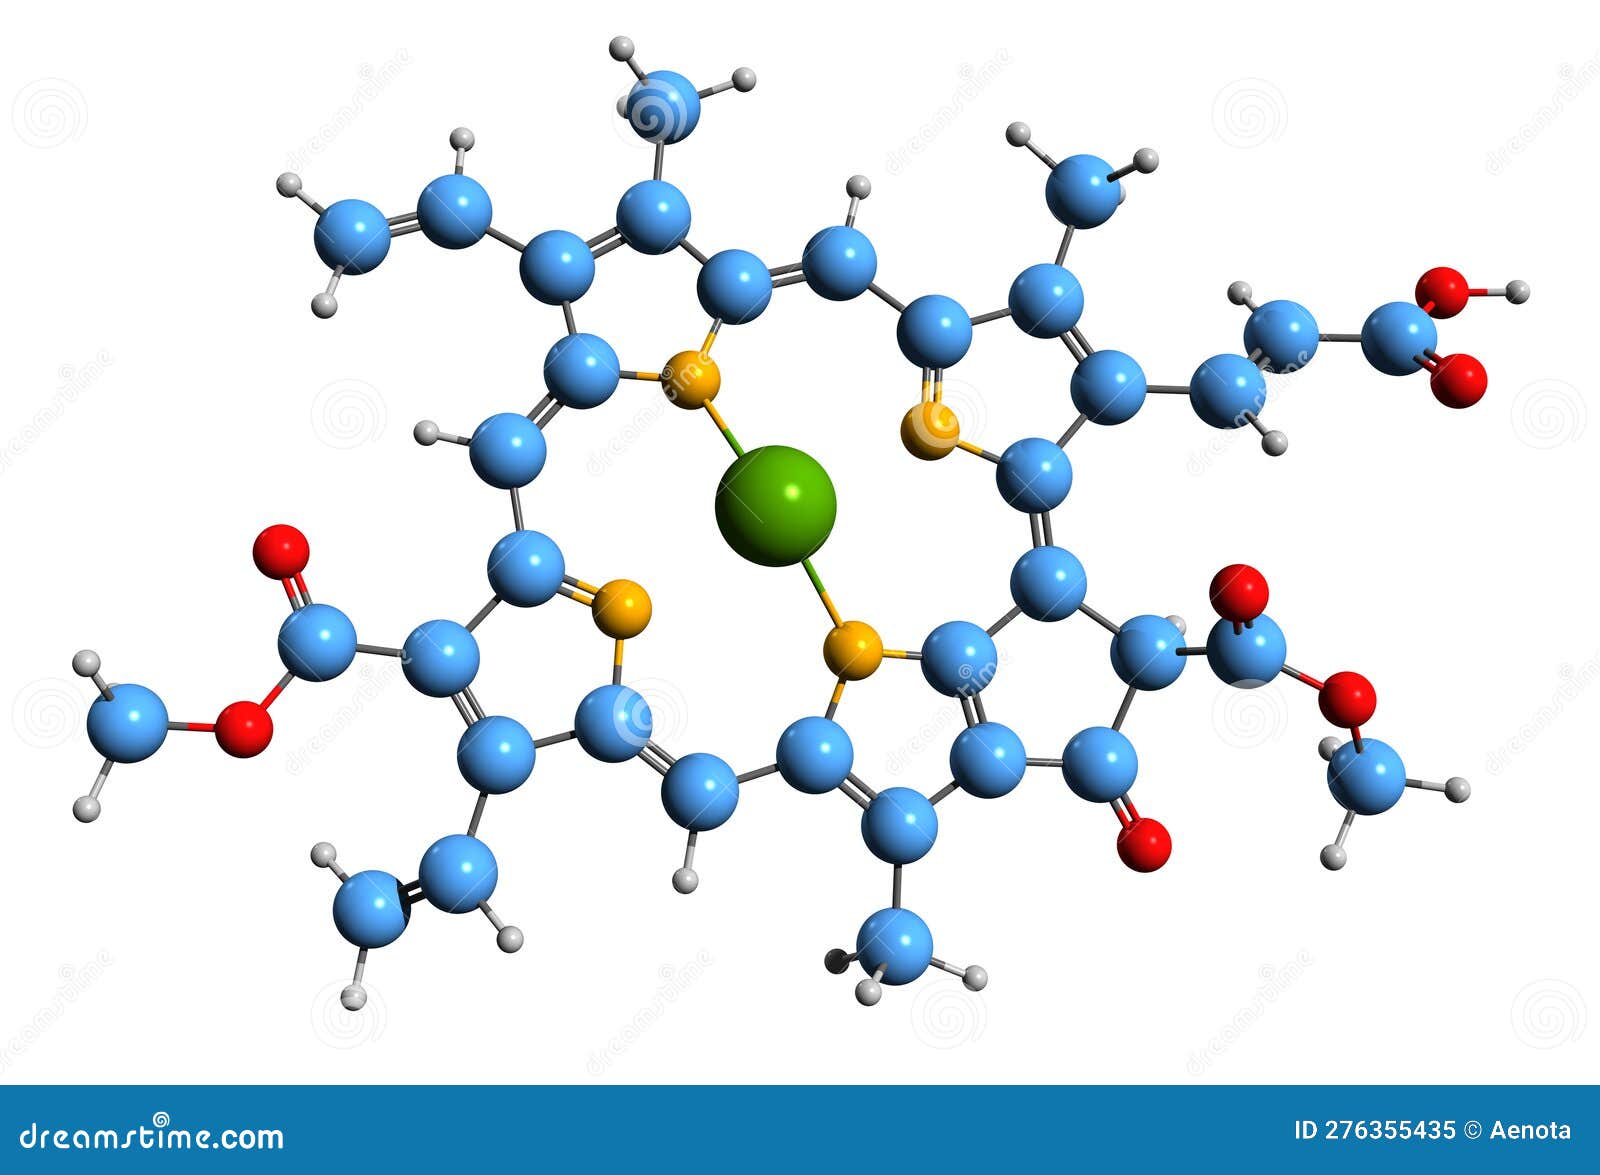 3d image of chlorophyll c3 skeletal formula